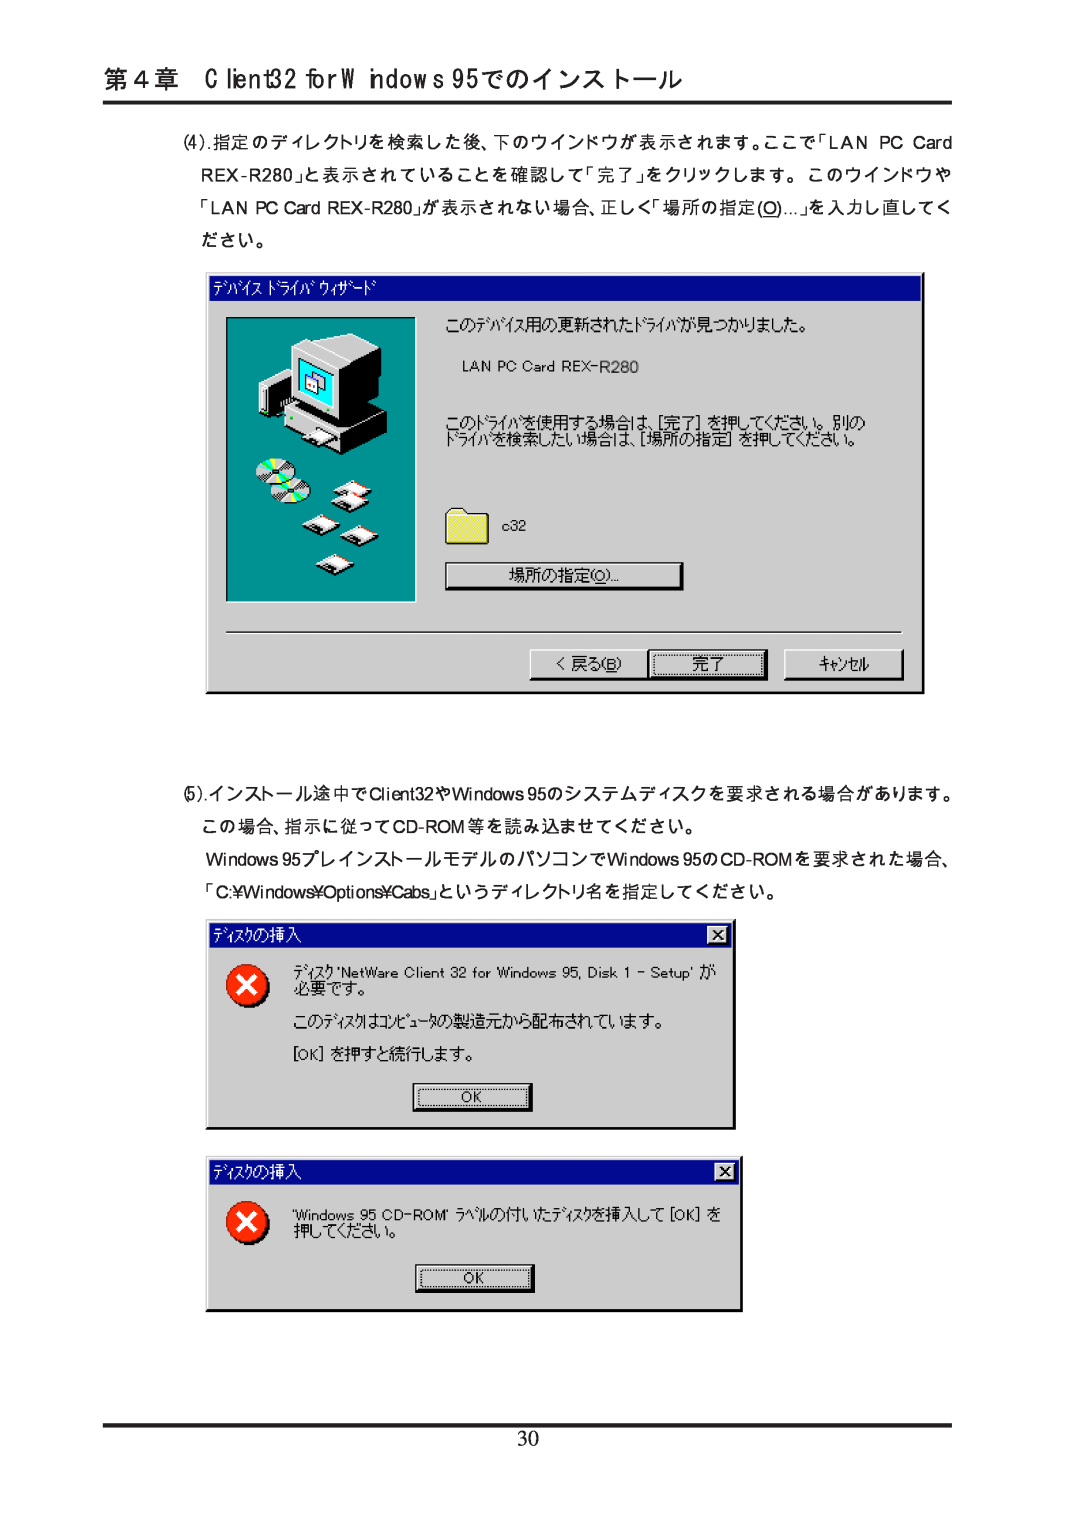 Ratoc Systems manual 第４章 Client32 for Windows 95でのインストール, 「LAN PC Card REX-R280」が表示されない場合、正しく「場所の指定O...」を入力し直してく ださい。 